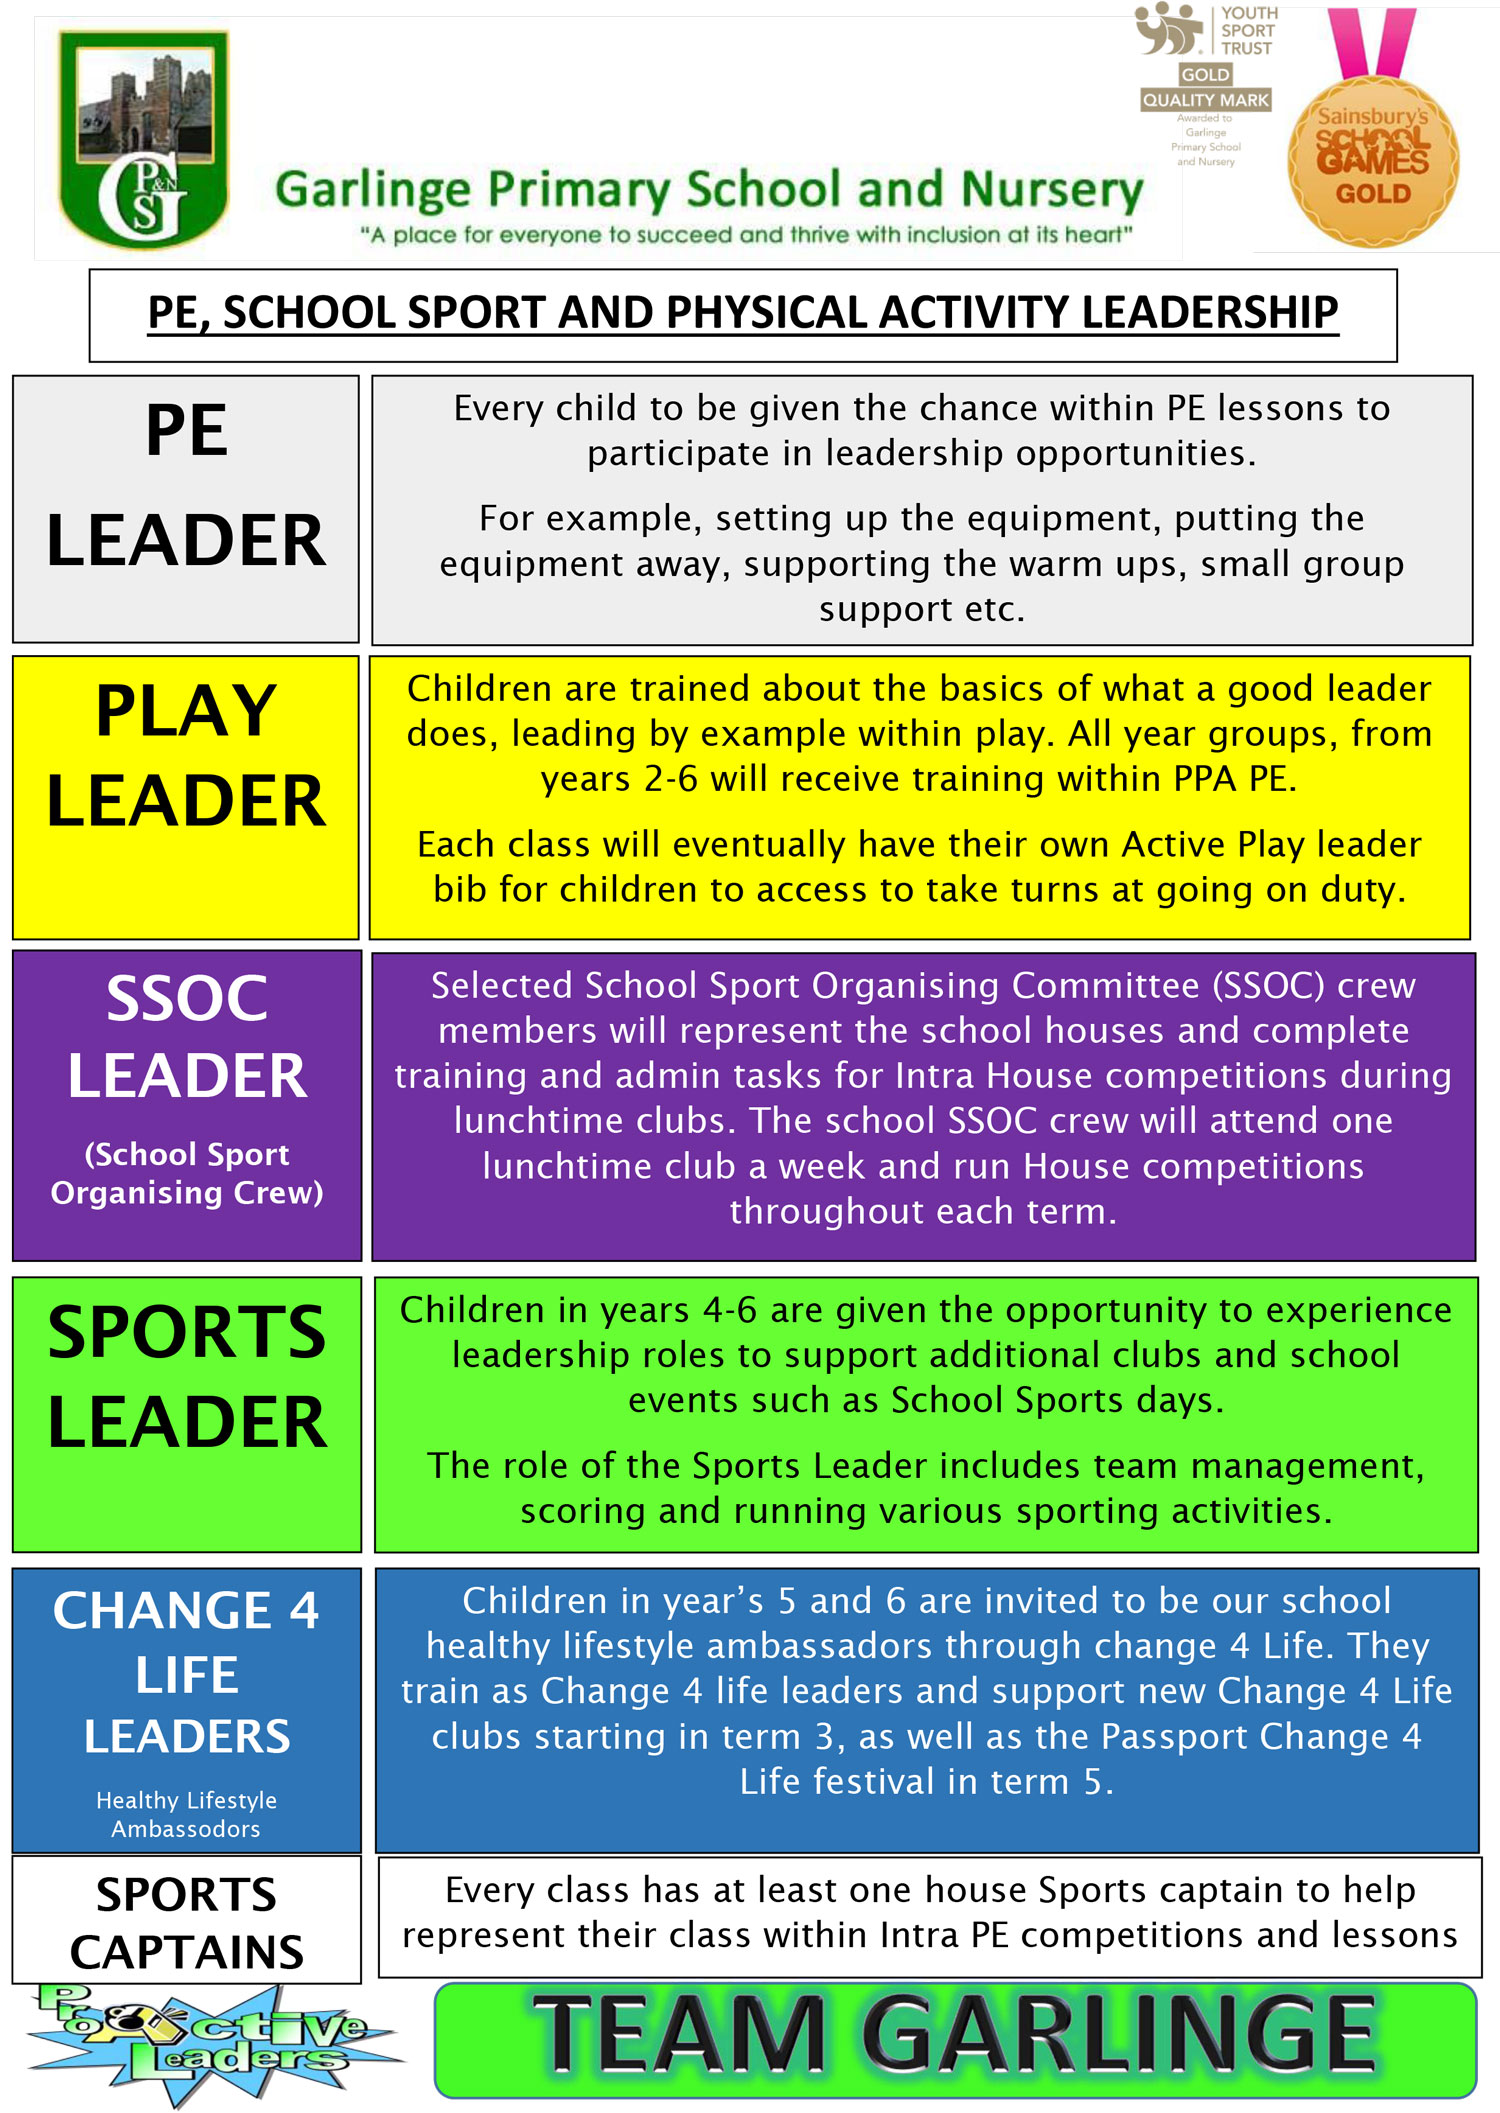 Garlinge Primary - Leadership Image 1